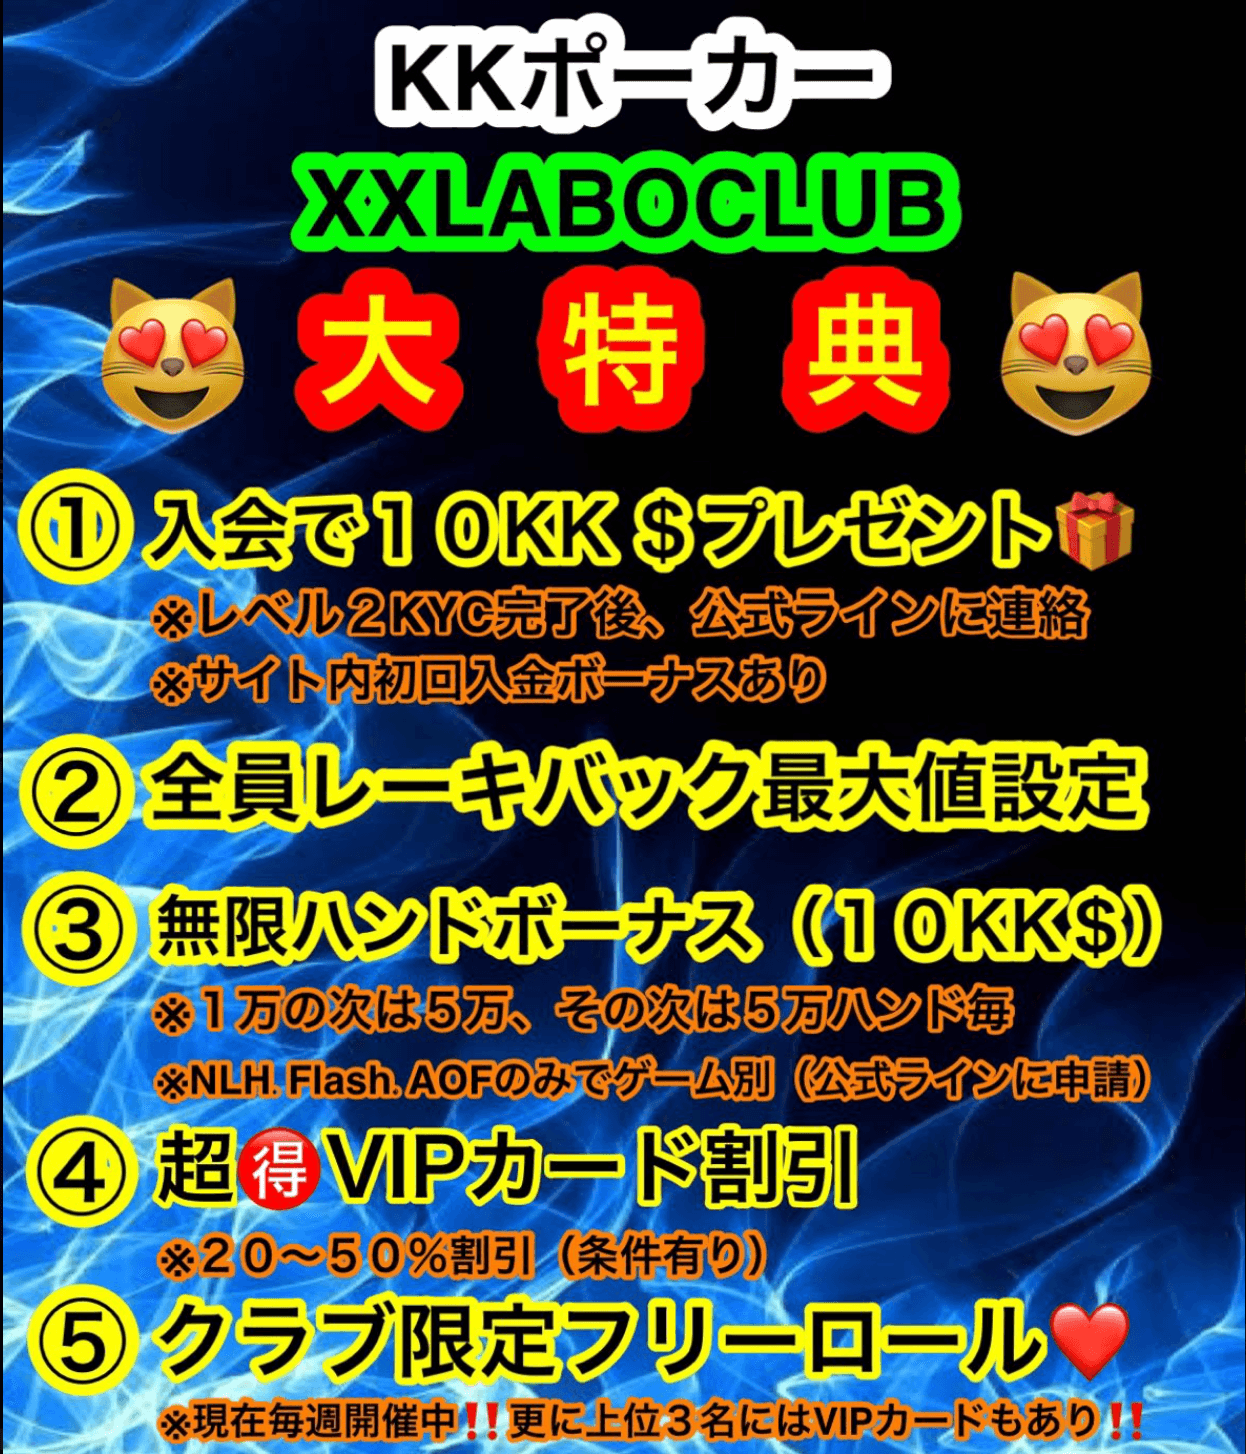 KKポーカー(KKPoker) クラブ XX LABO CLUB 特典